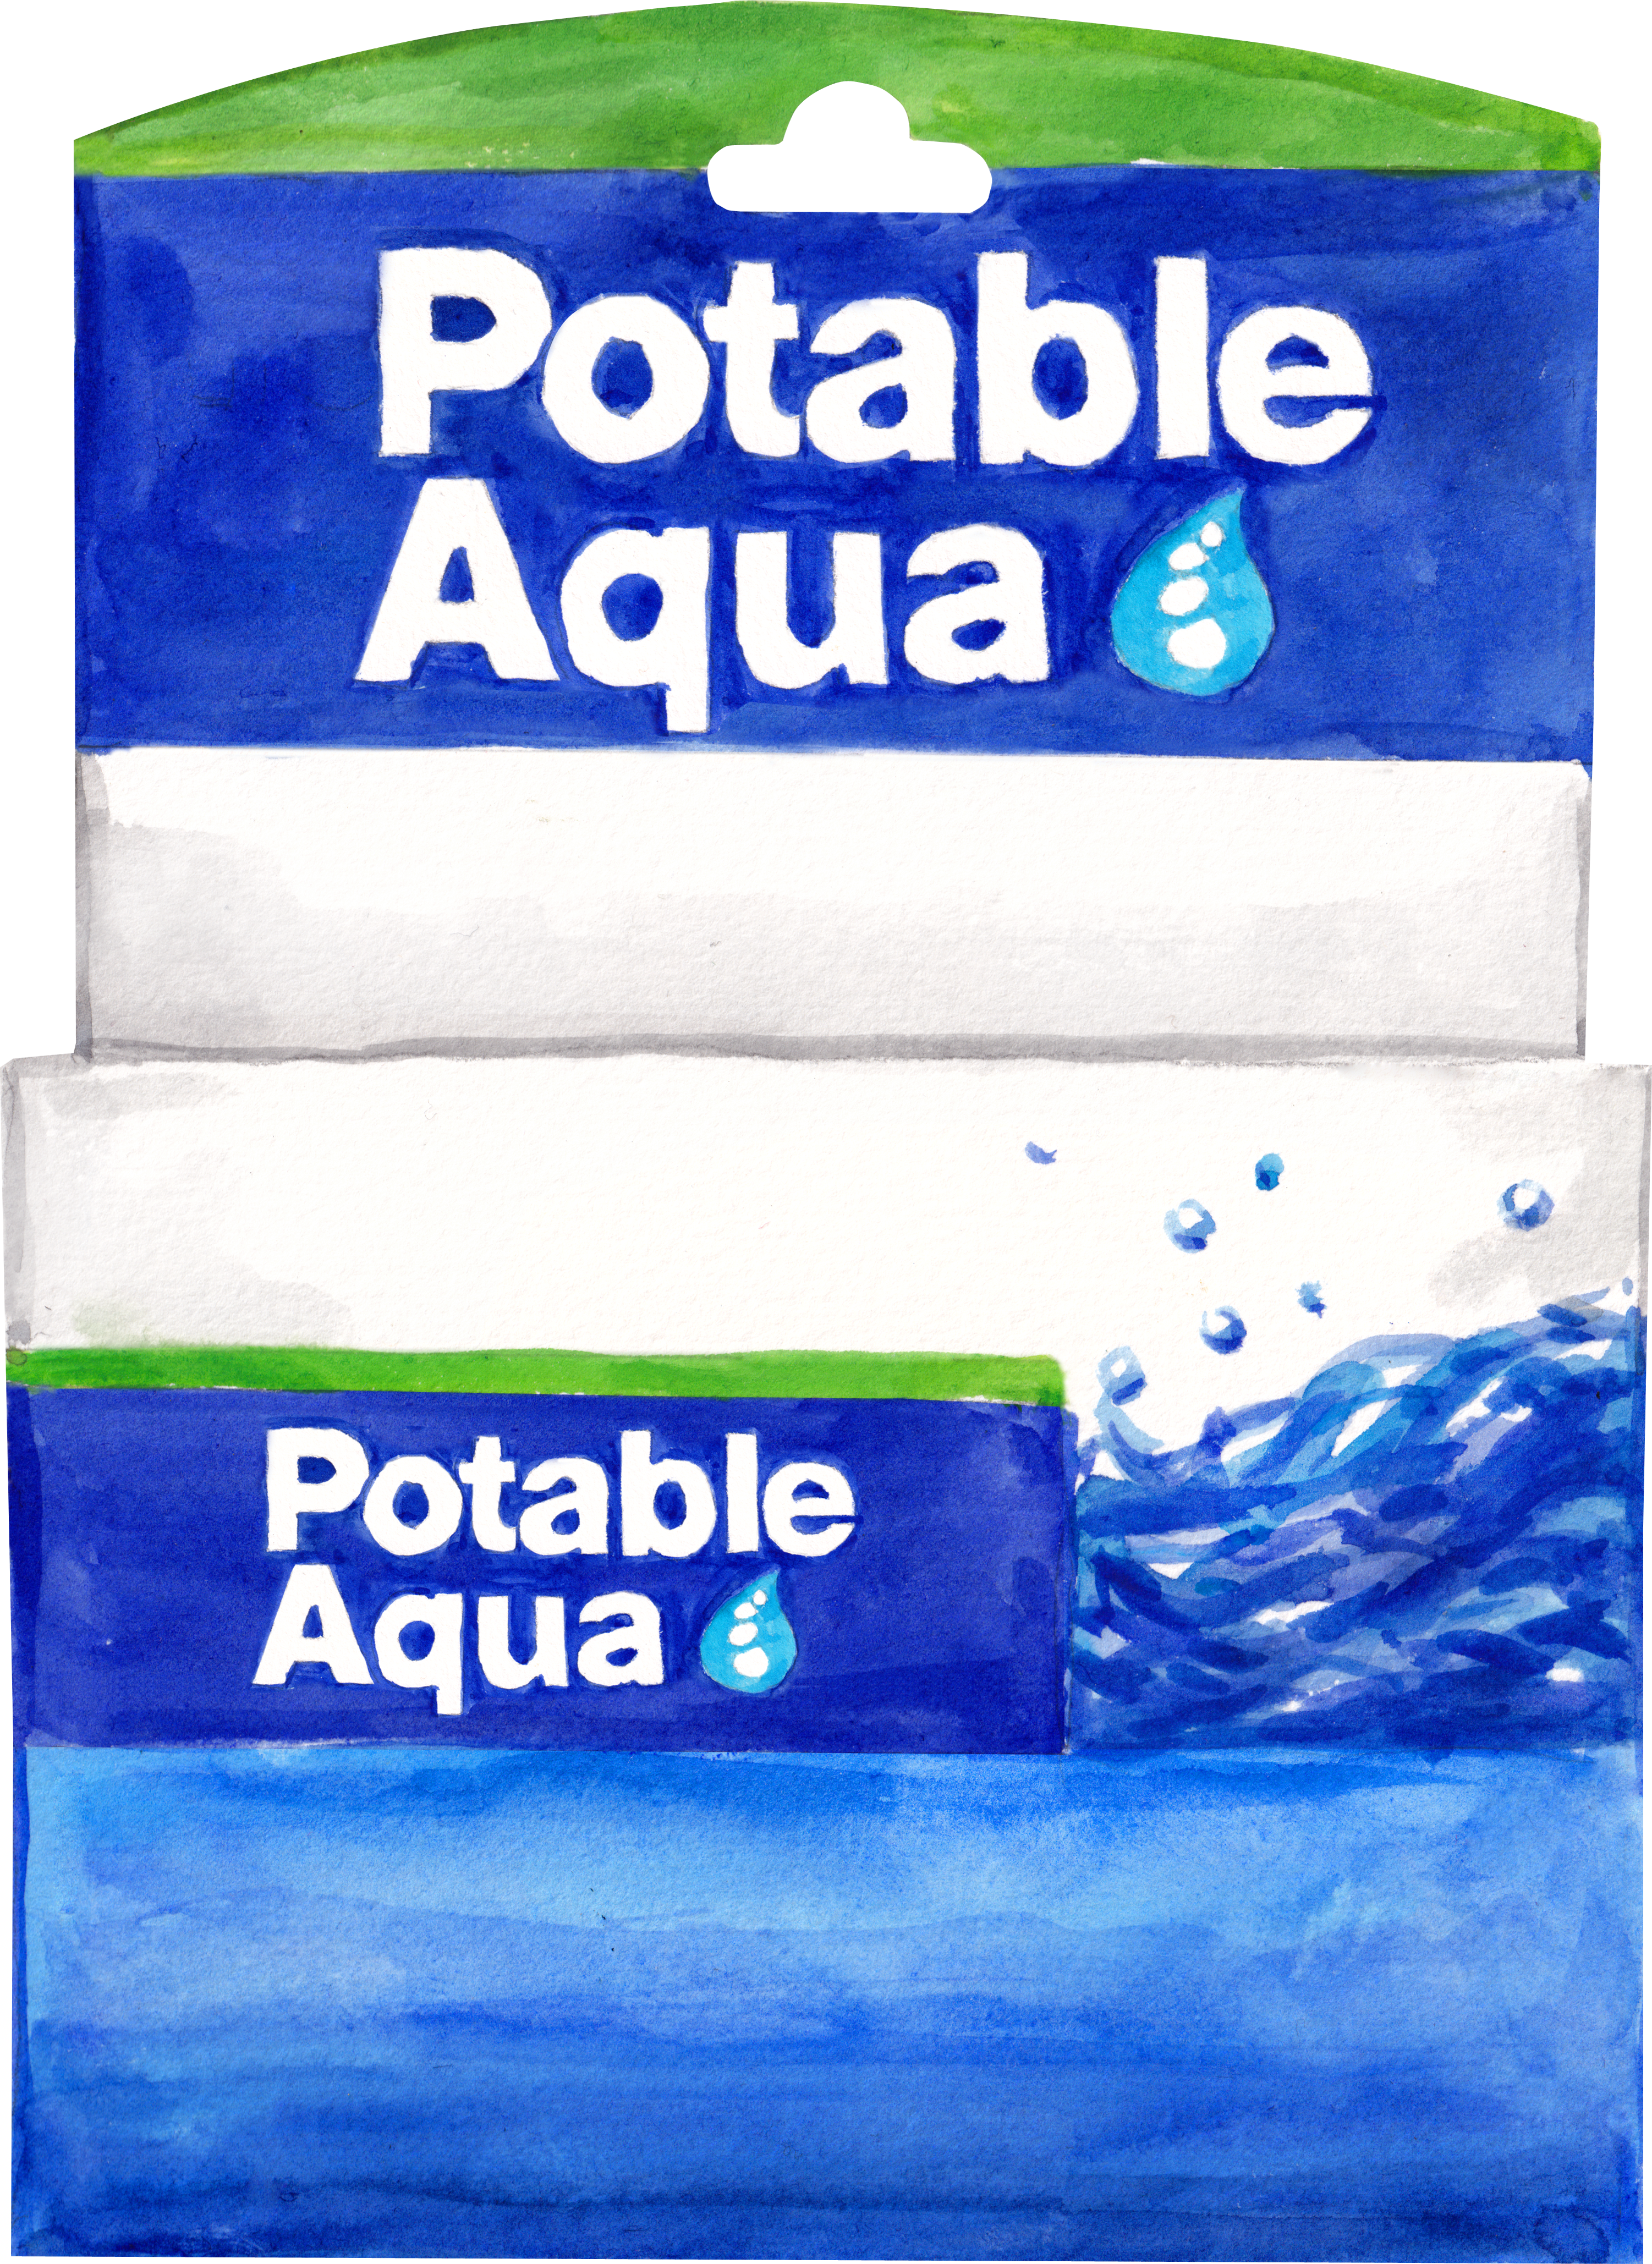 Potable Aqua chlorine dioxide tablets